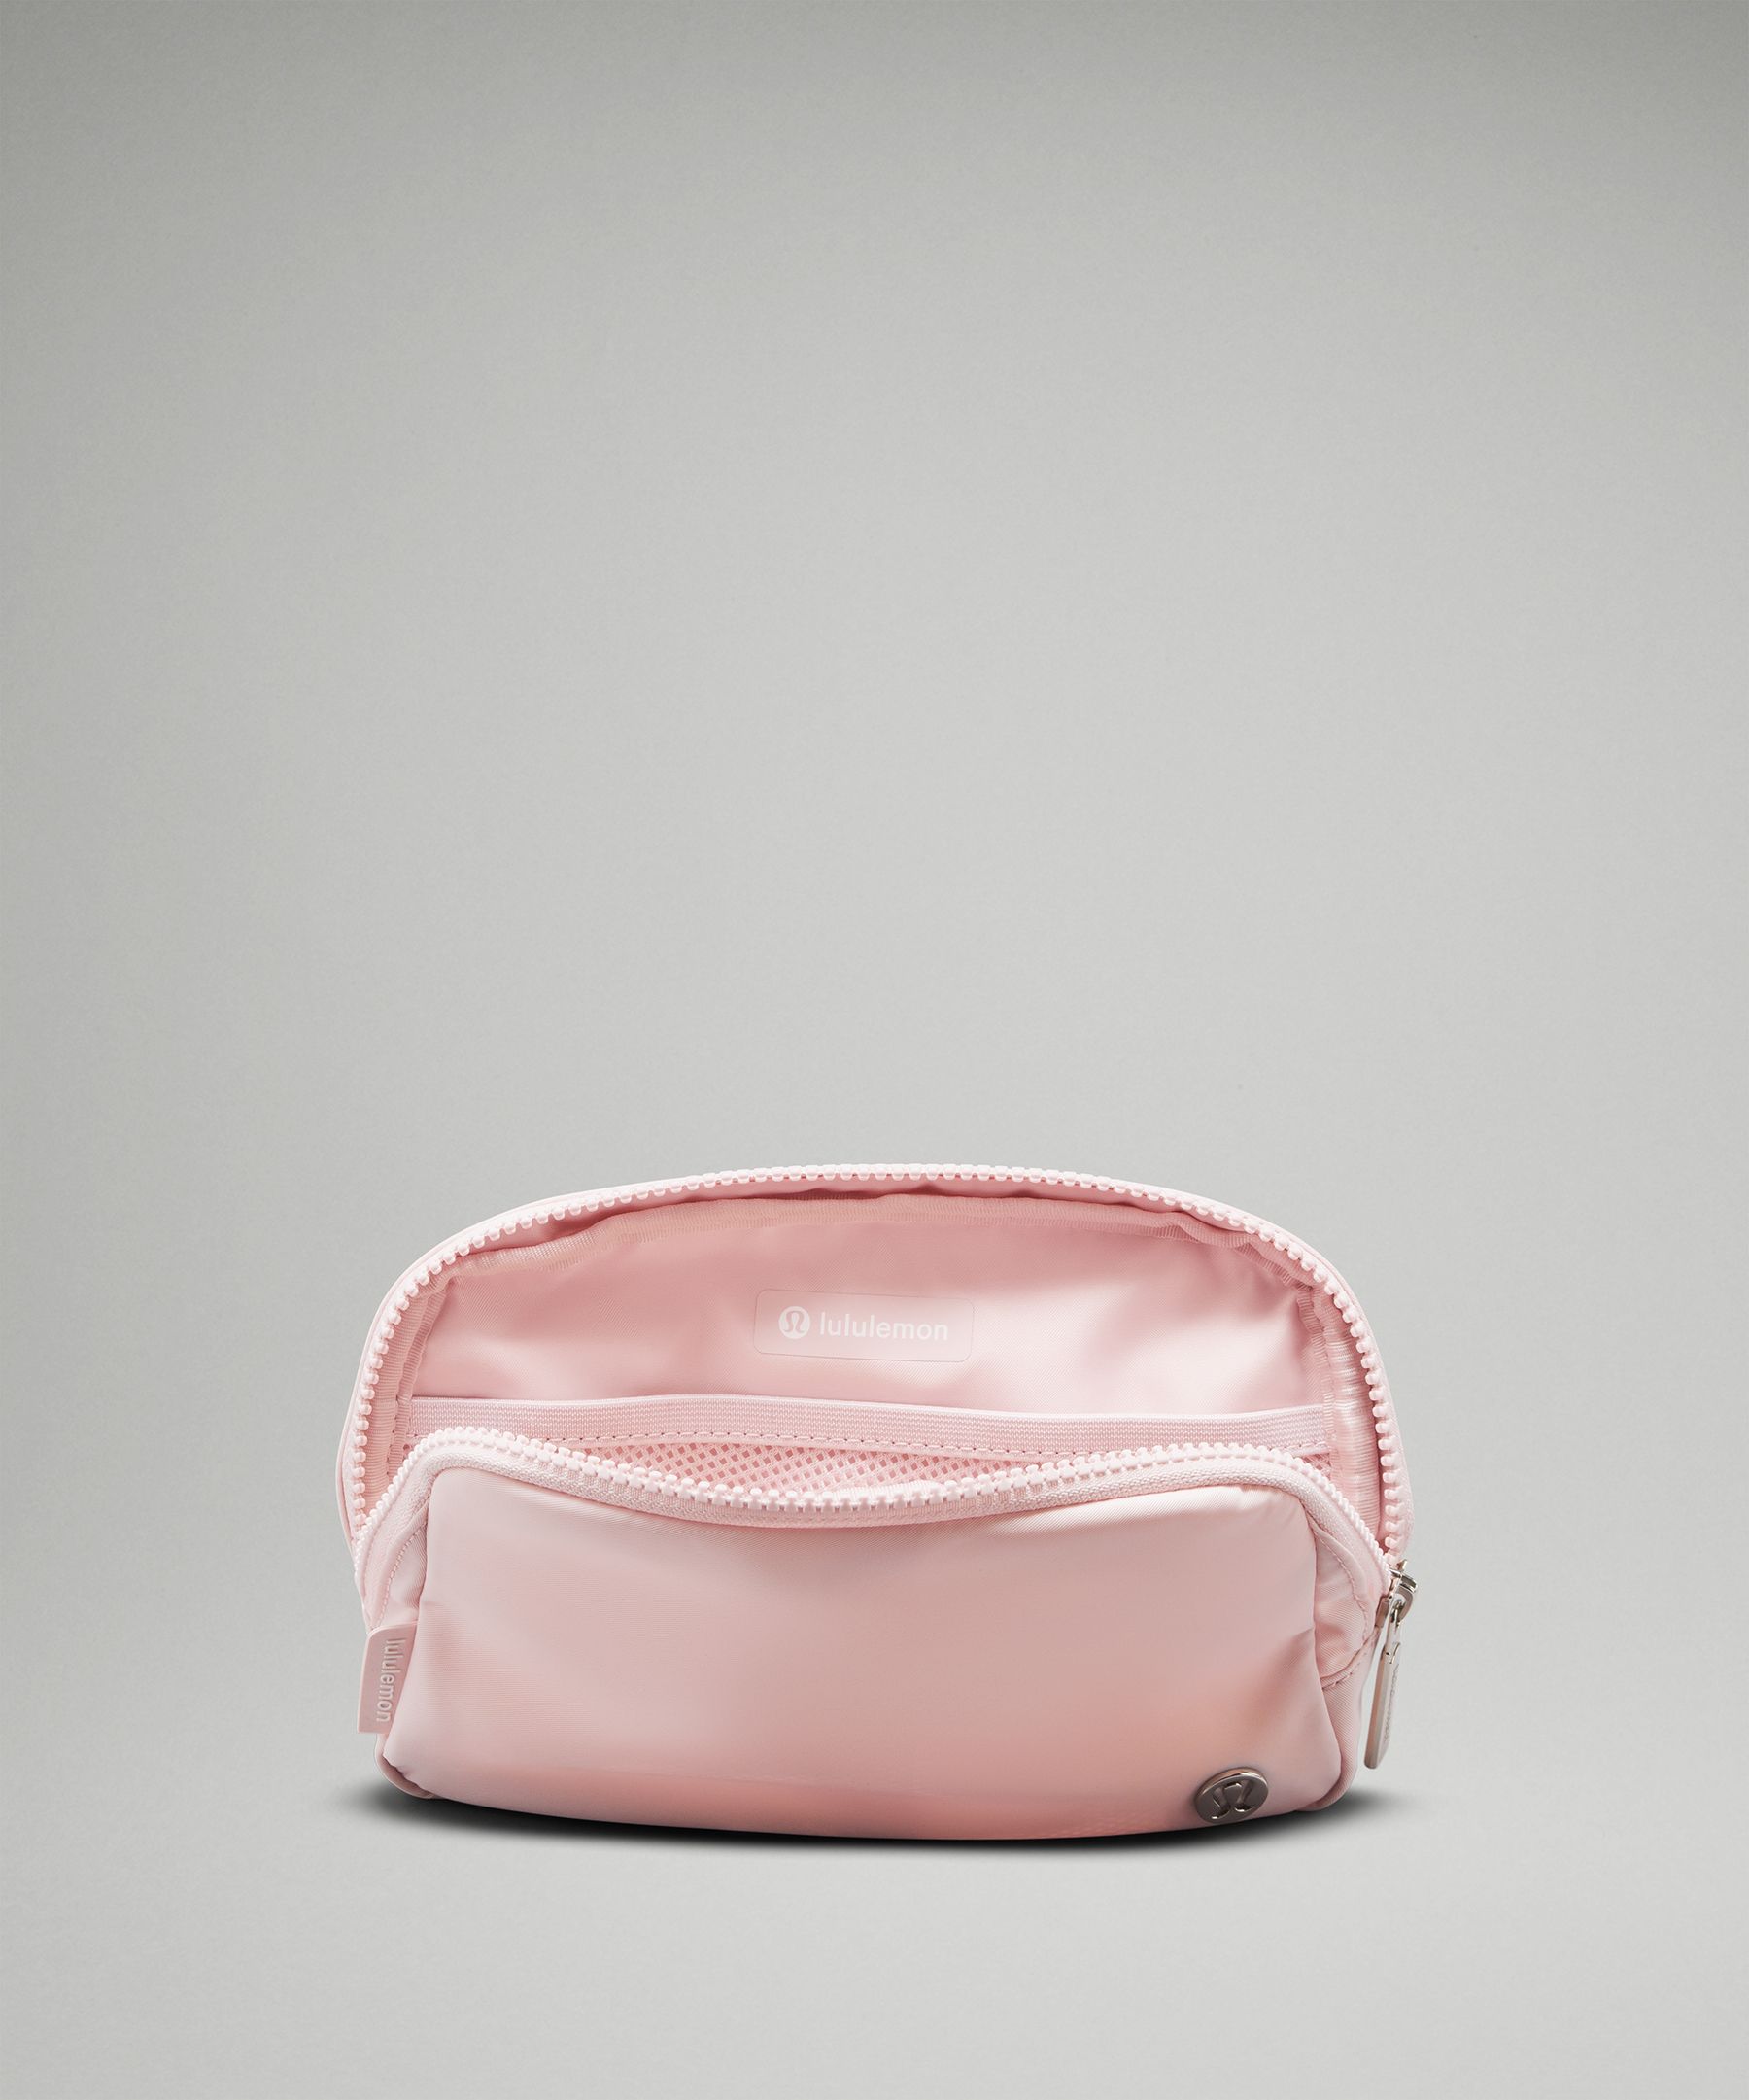 Lululemon Belt Bag in Pink